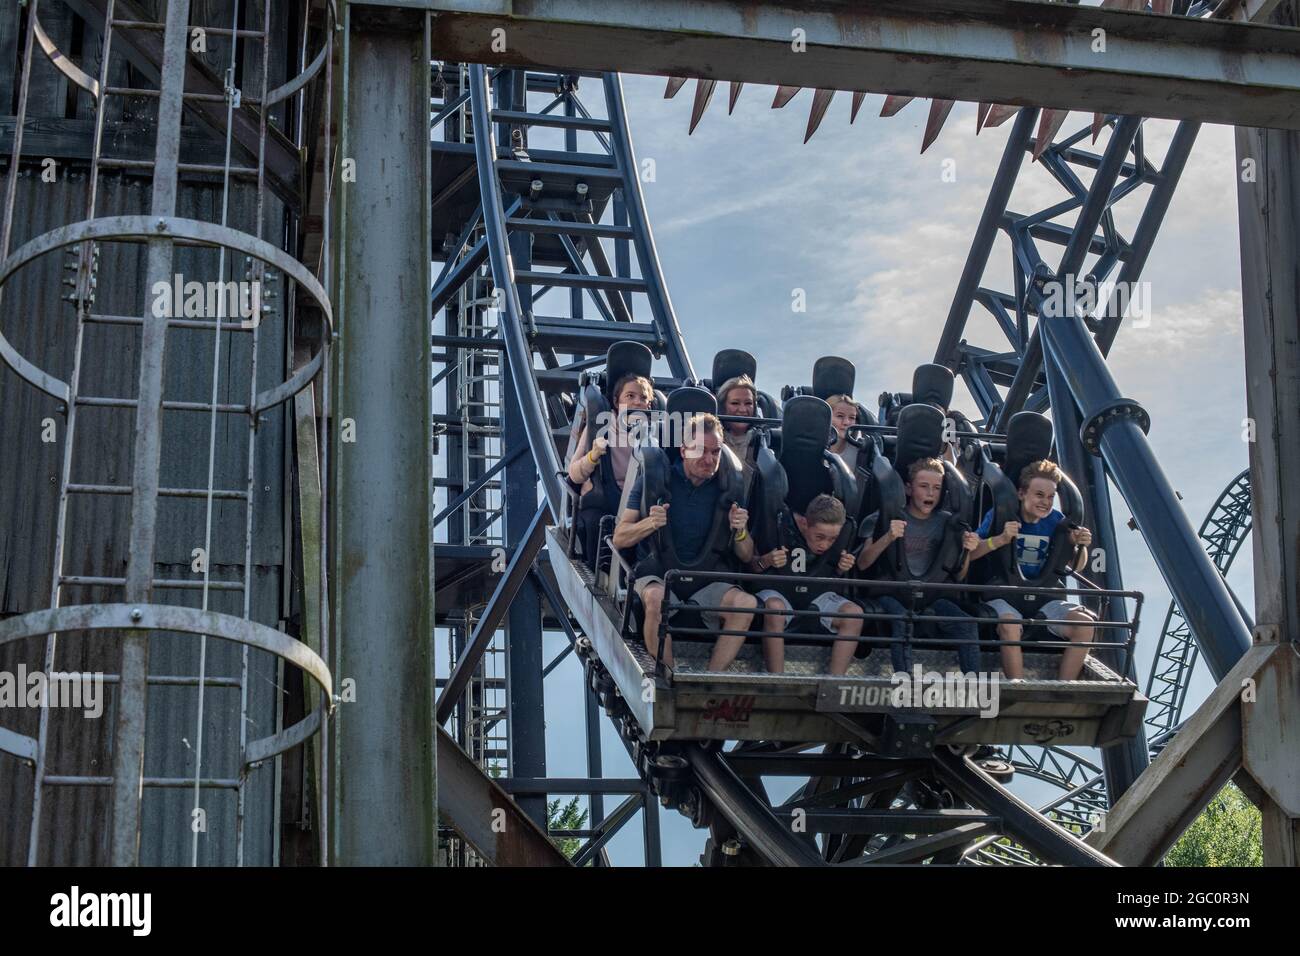 Abbiamo visto il film Ride JIGSAW Killer a tema Rollercoaster Thorpe Park, foto di panning del parco a tema Foto Stock